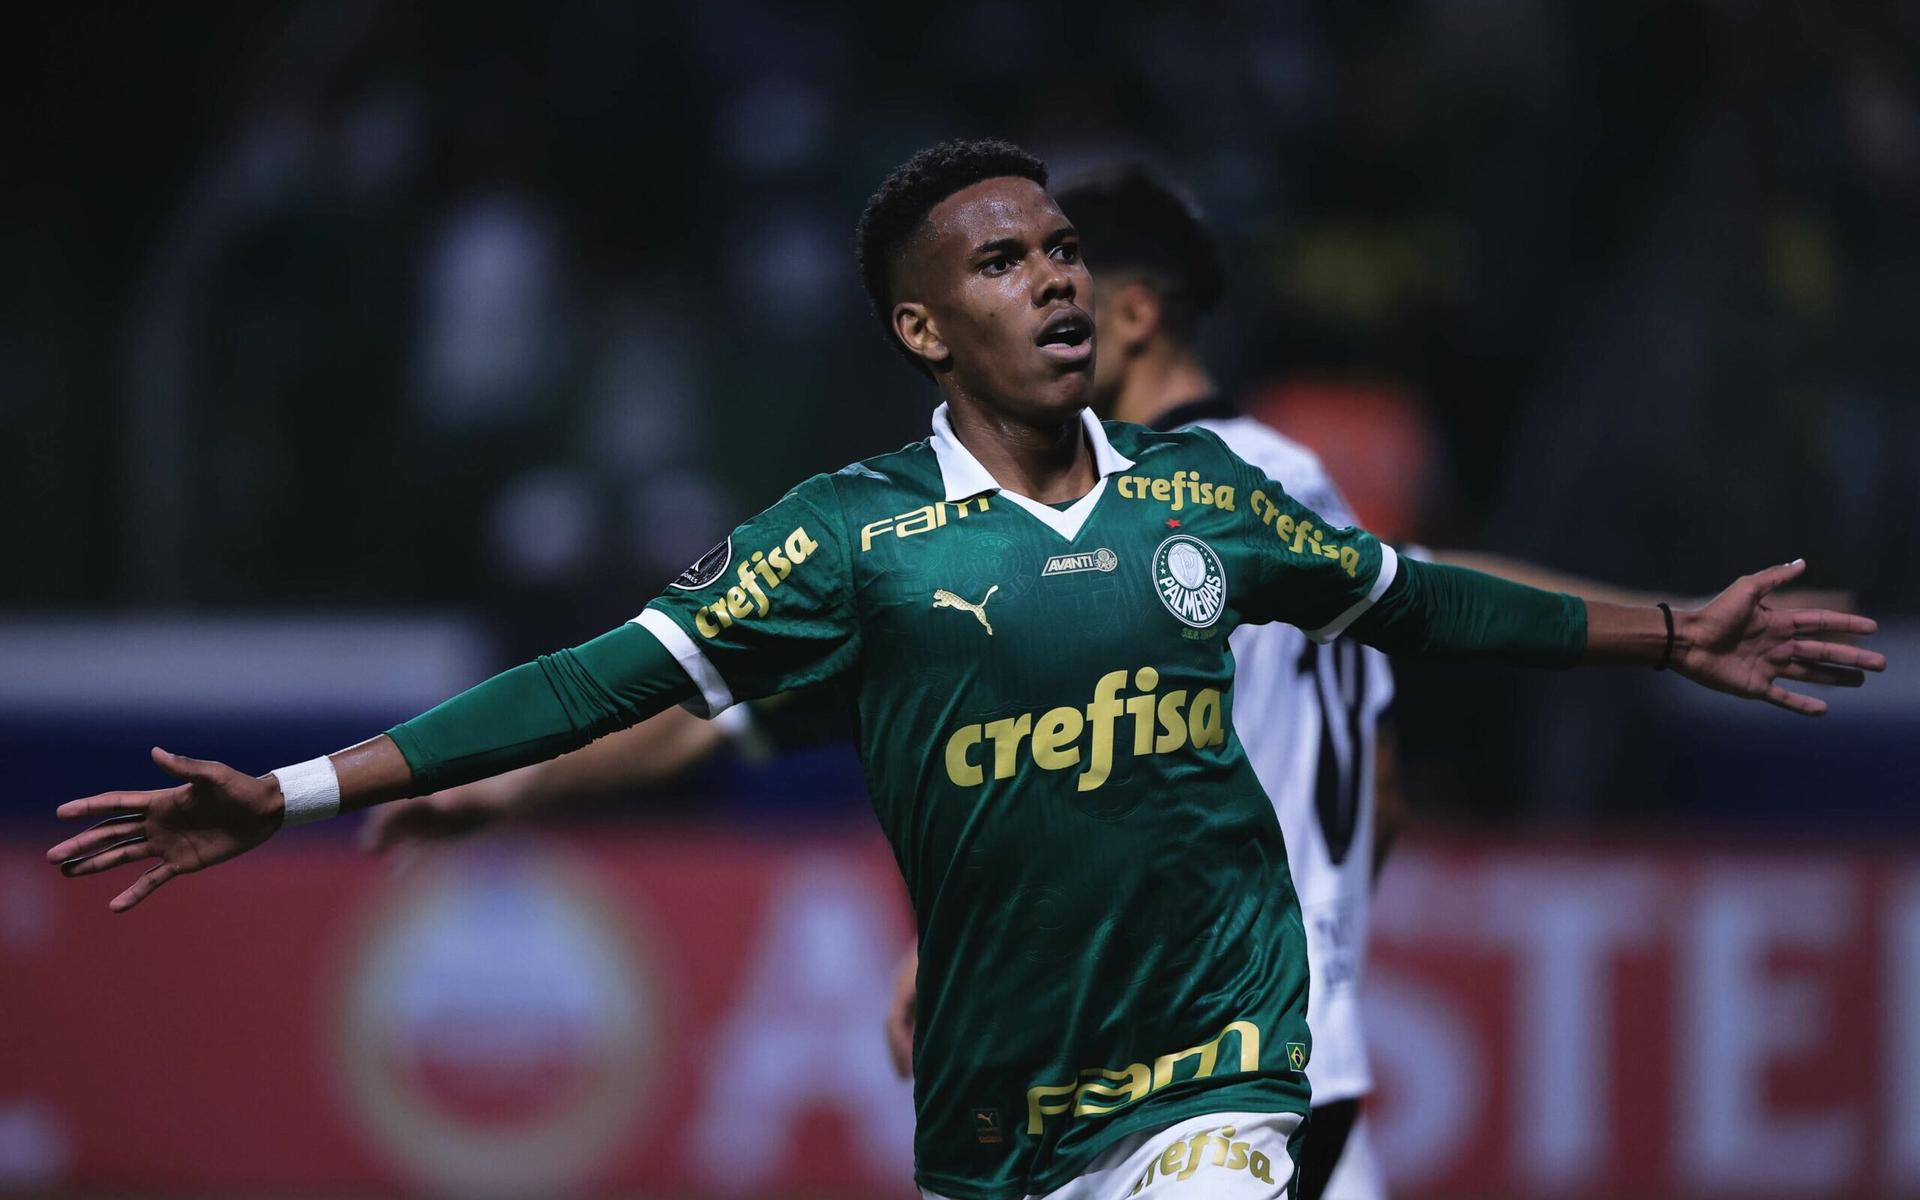 Palmeiras-Liverpool-Libertadores-Estevao-scaled-aspect-ratio-512-320